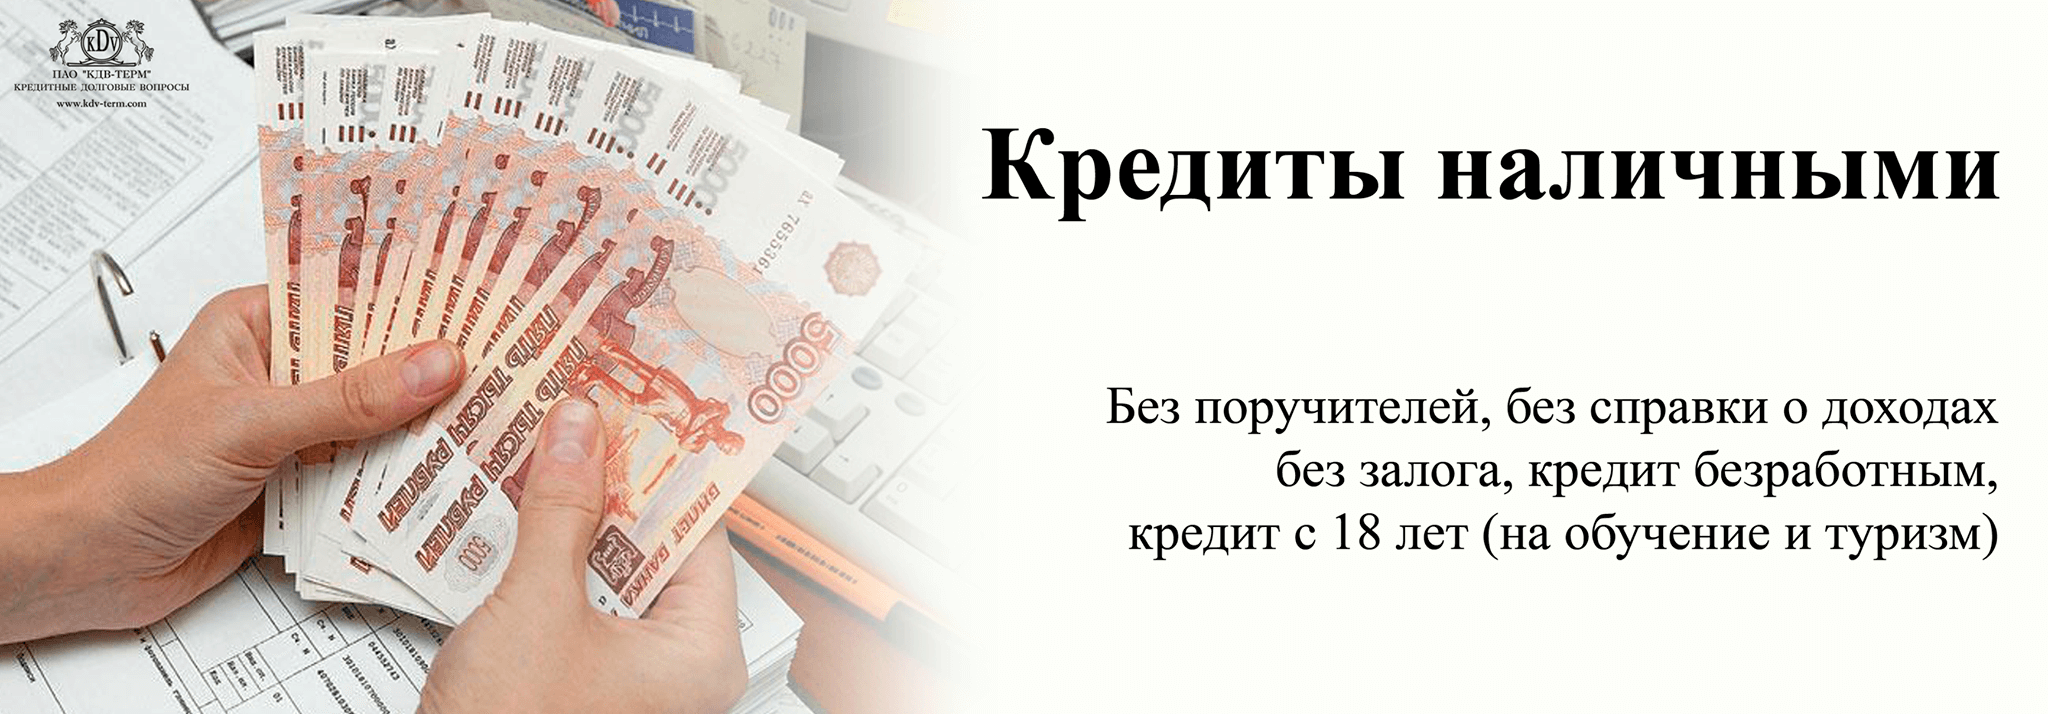 Займы наличными в Нижнем Новгороде без проверок по паспорту срочно без провероки кредитной истории